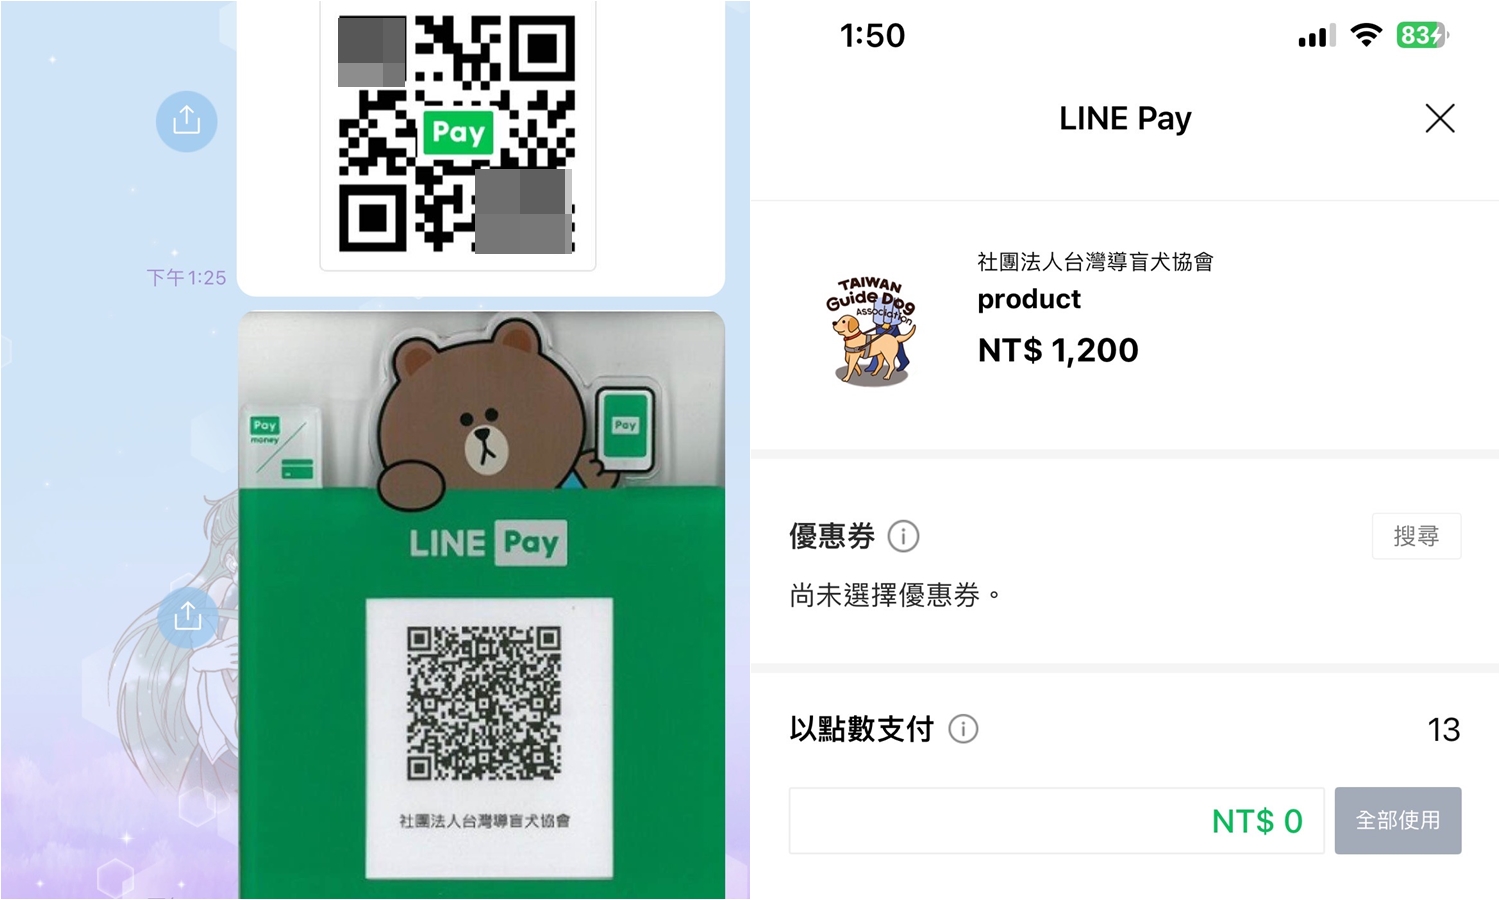 【科技新知】別人傳LINE Pay QR碼圖片給你 如何付款給對方？